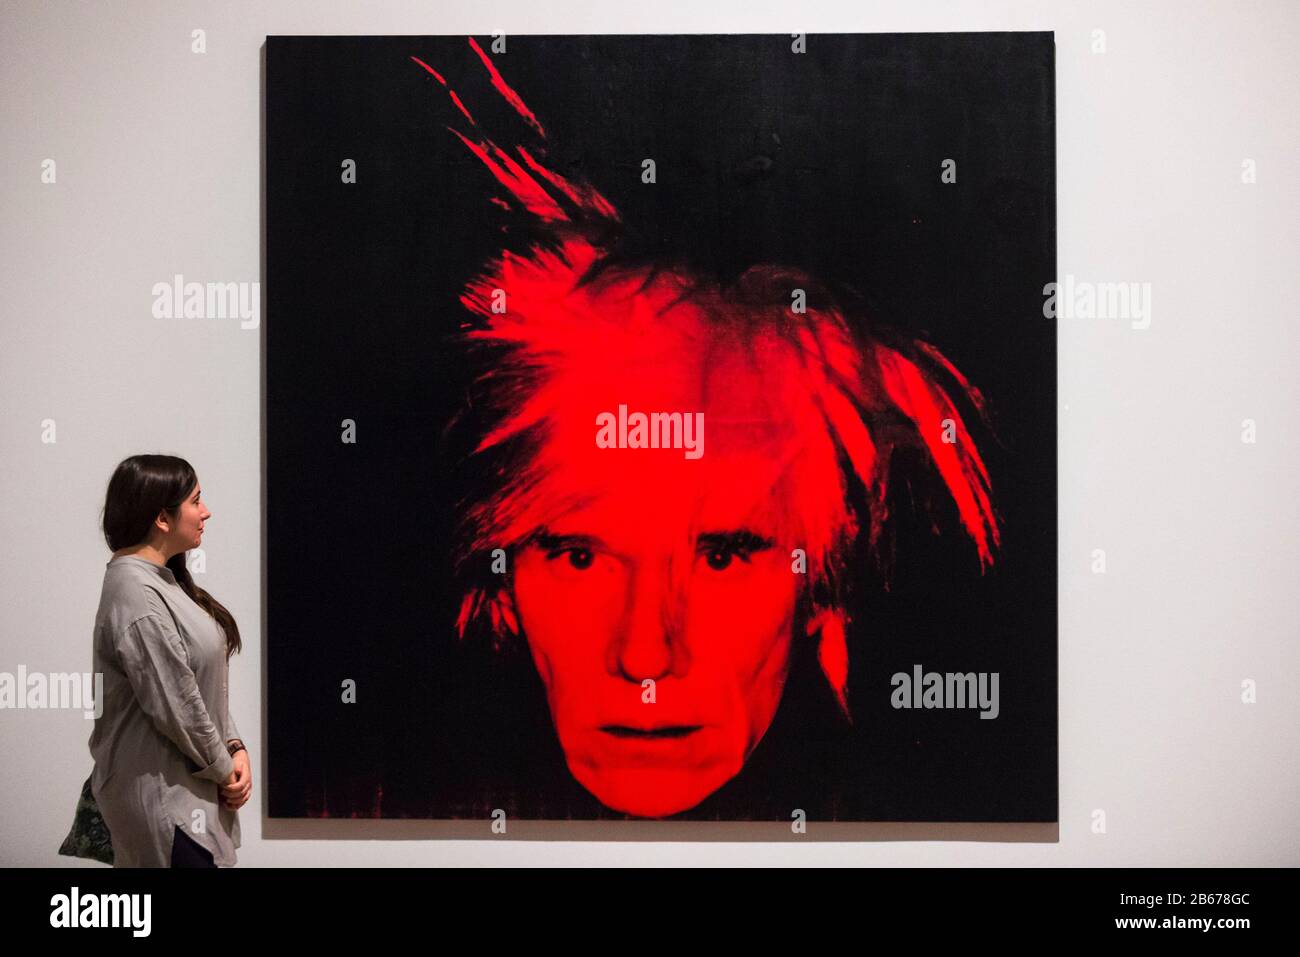 Londres, Royaume-Uni. 10 Mars 2020. Un membre du personnel pose à côté de 'self-Portrait', 1986, par Andy Warhol. Aperçu de « Andy Warhol », une rétrospective de plus de 100 œuvres de l'un des artistes les plus reconnaissables de la fin du XXe siècle. L'exposition se déroule du 12 mars au 6 septembre 2020 à Tate Modern. Crédit: Stephen Chung / Alay Live News Banque D'Images